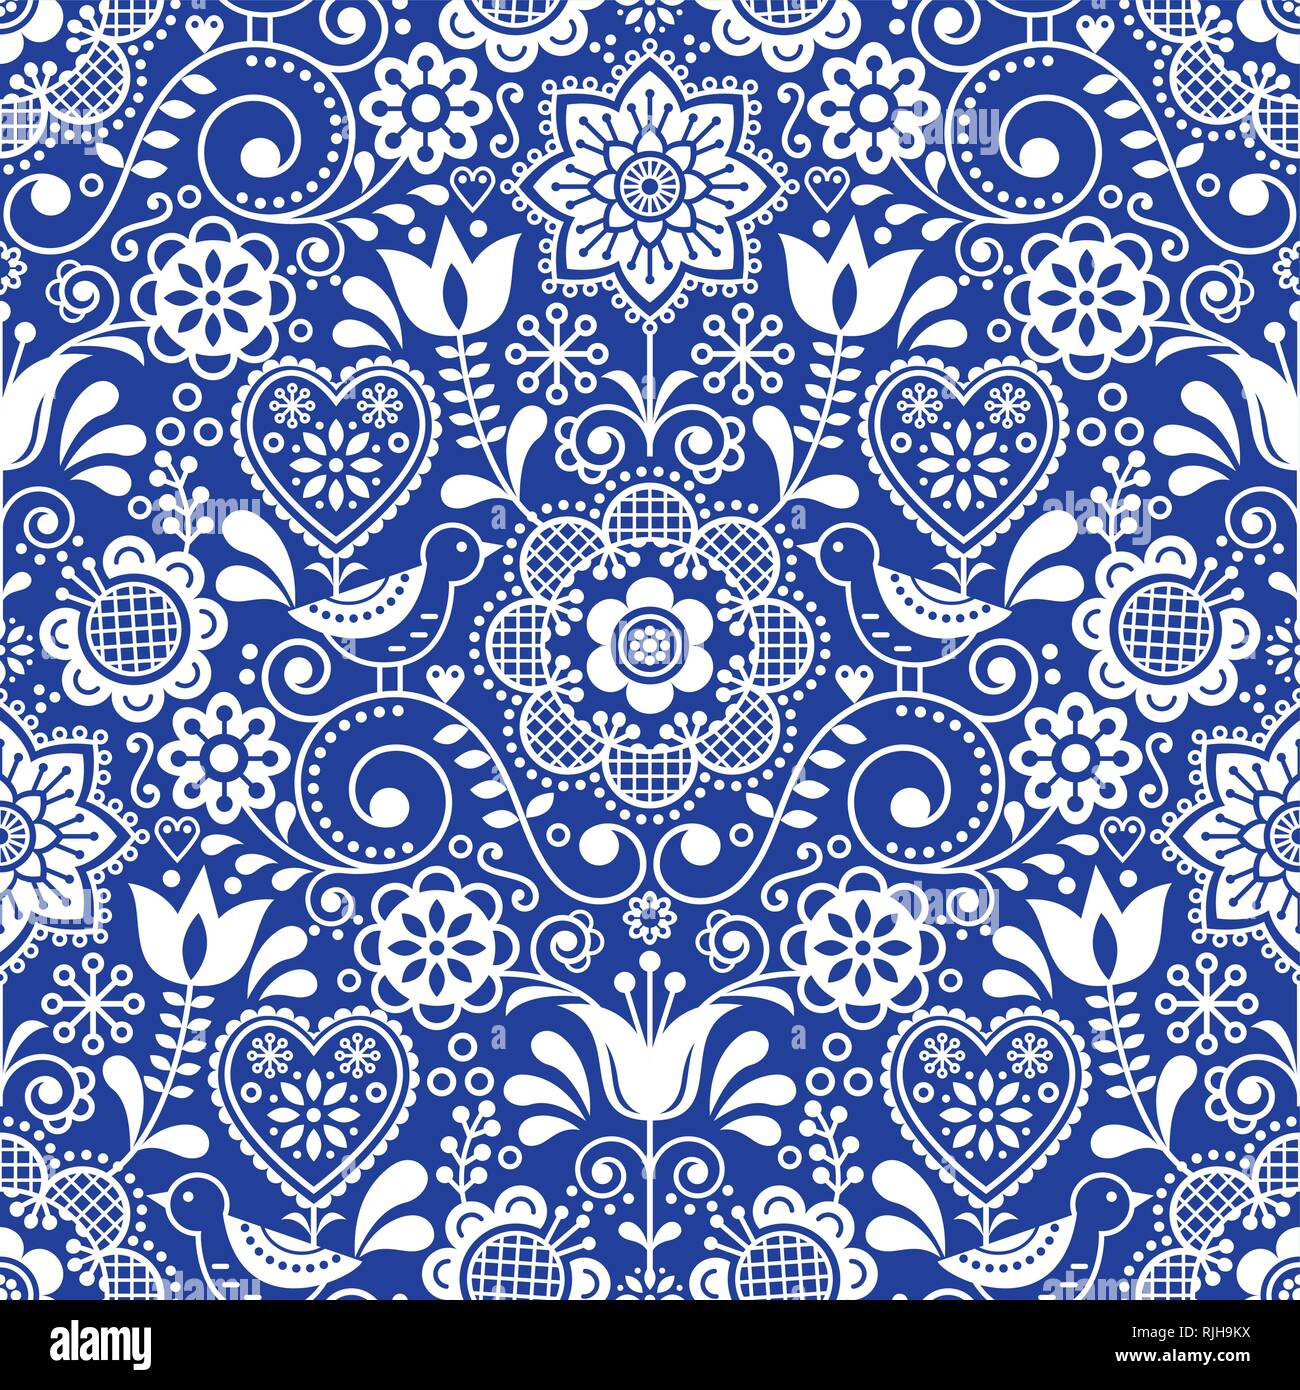 L'art populaire transparente modèle vectoriel avec oiseaux et fleurs, Scandinavian design floral répétitif en blanc sur bleu marine Illustration de Vecteur